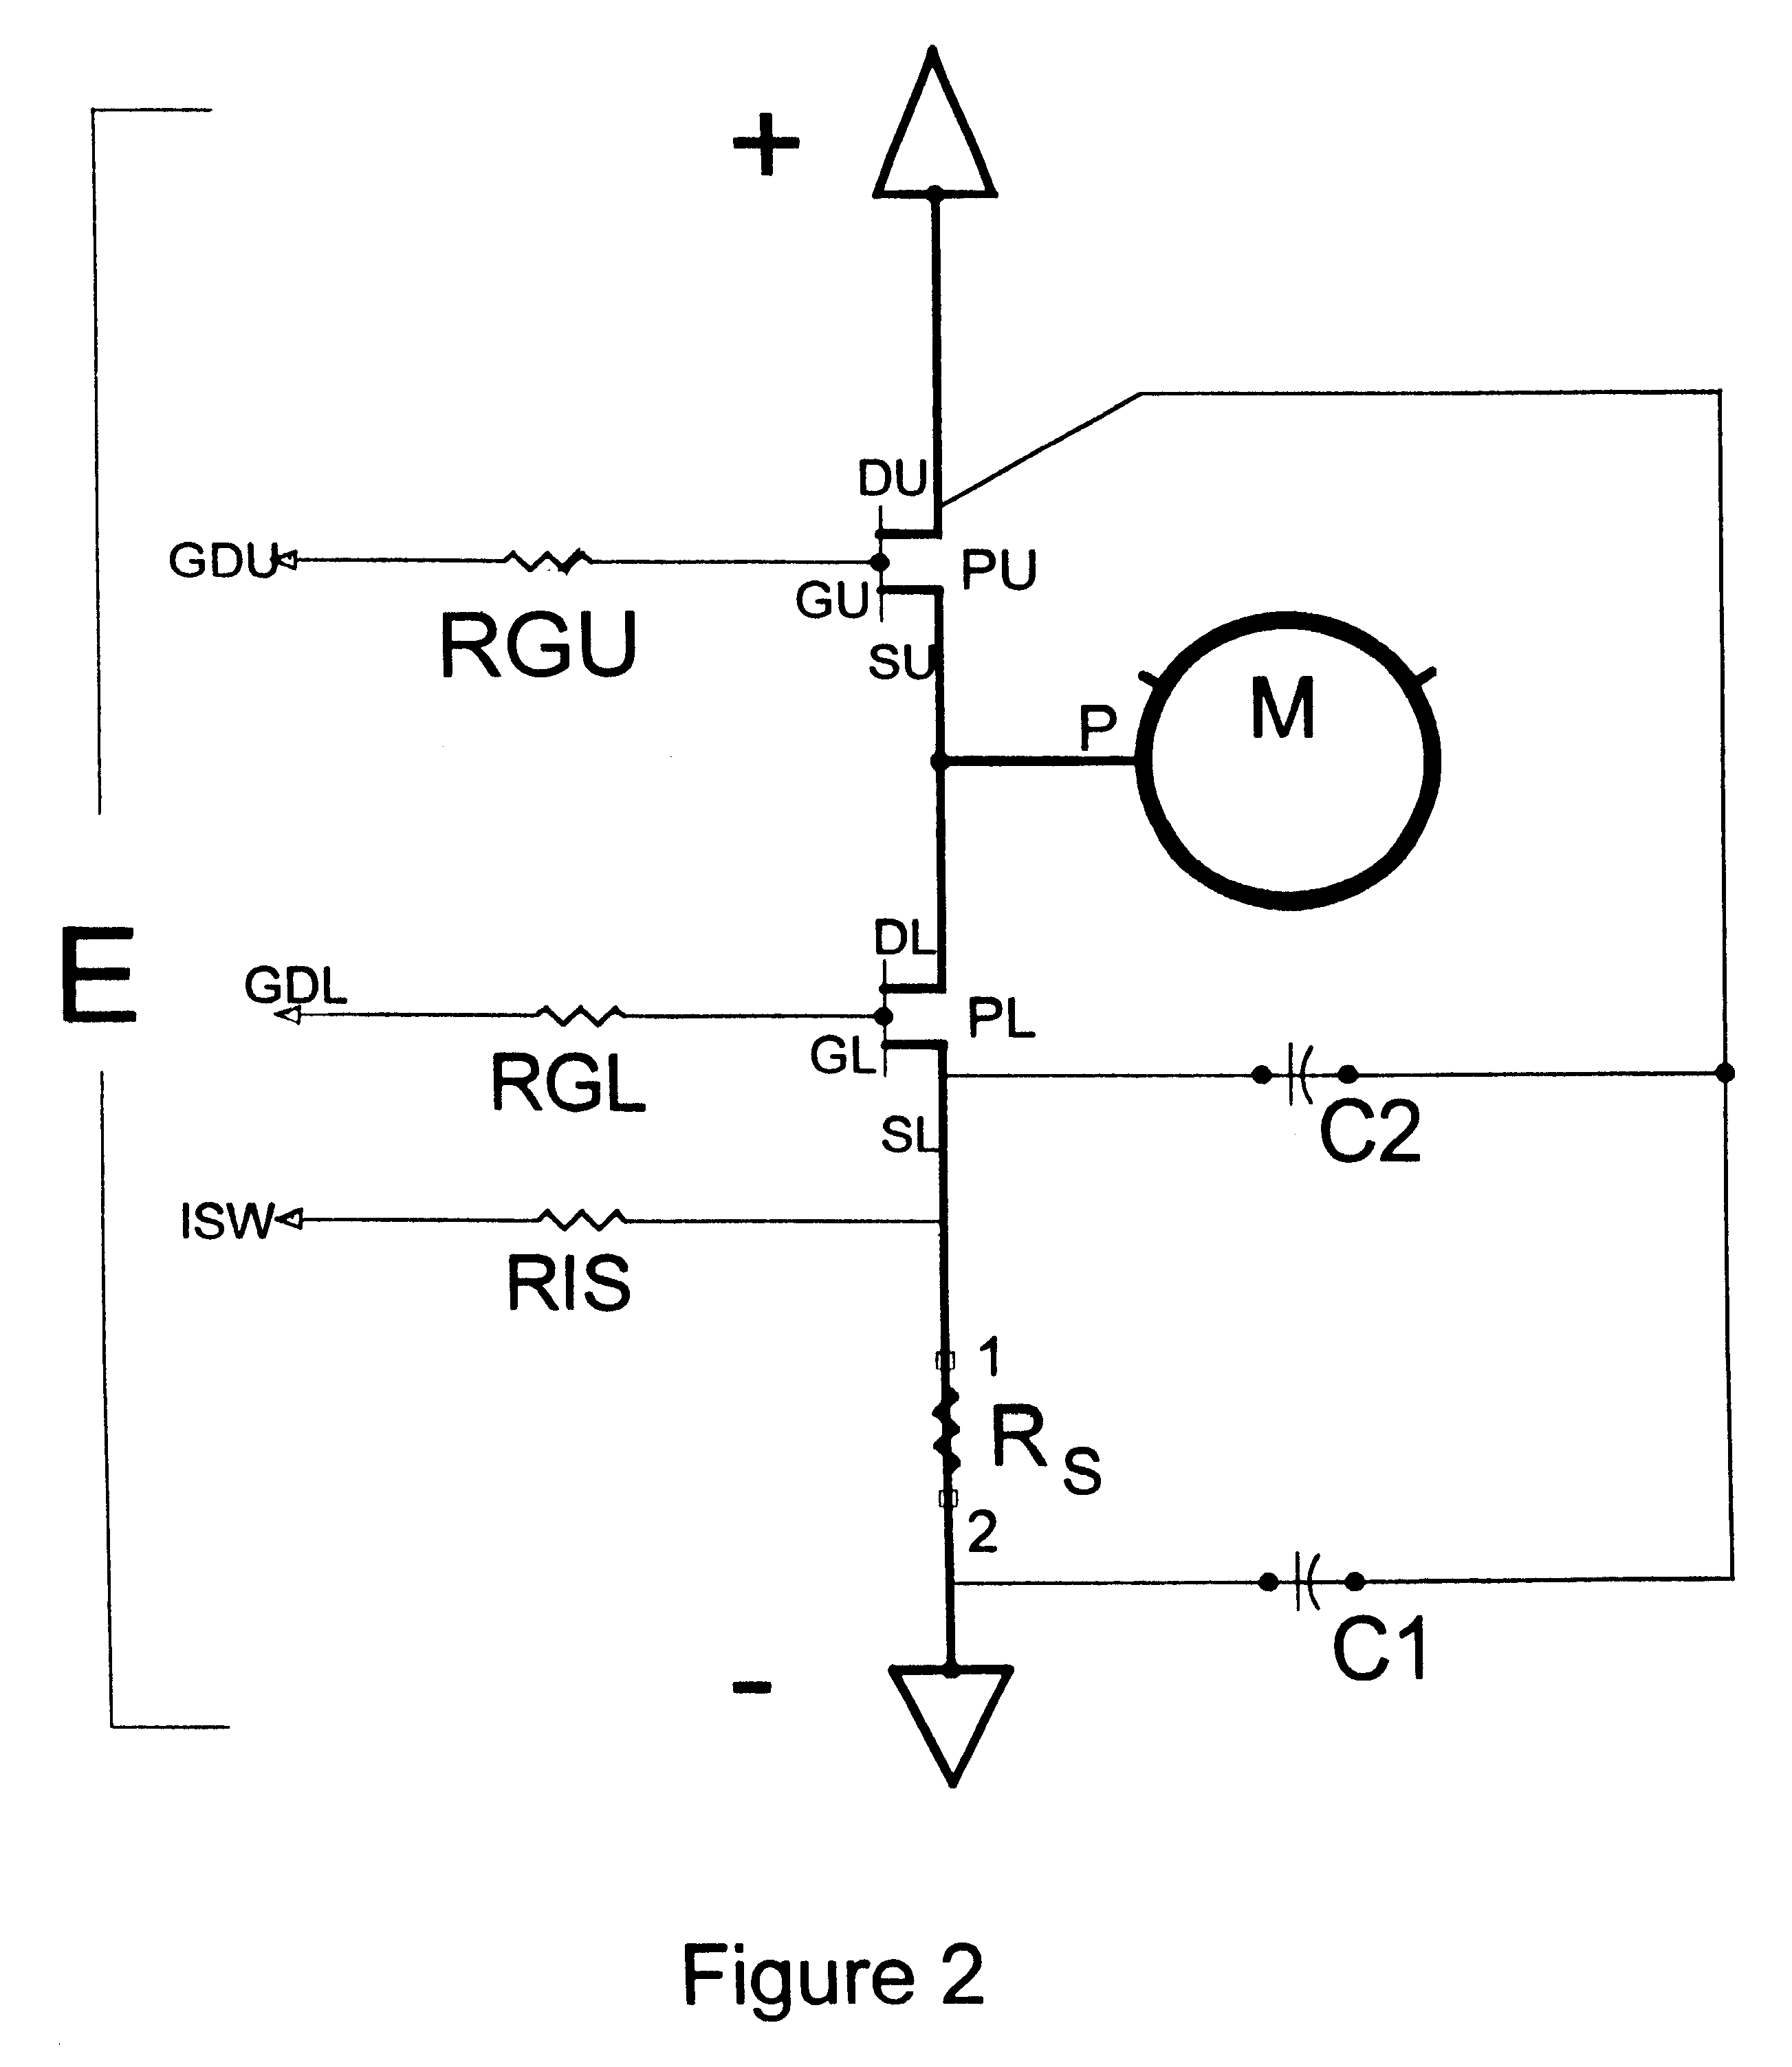 Motor controller power switch arrangement